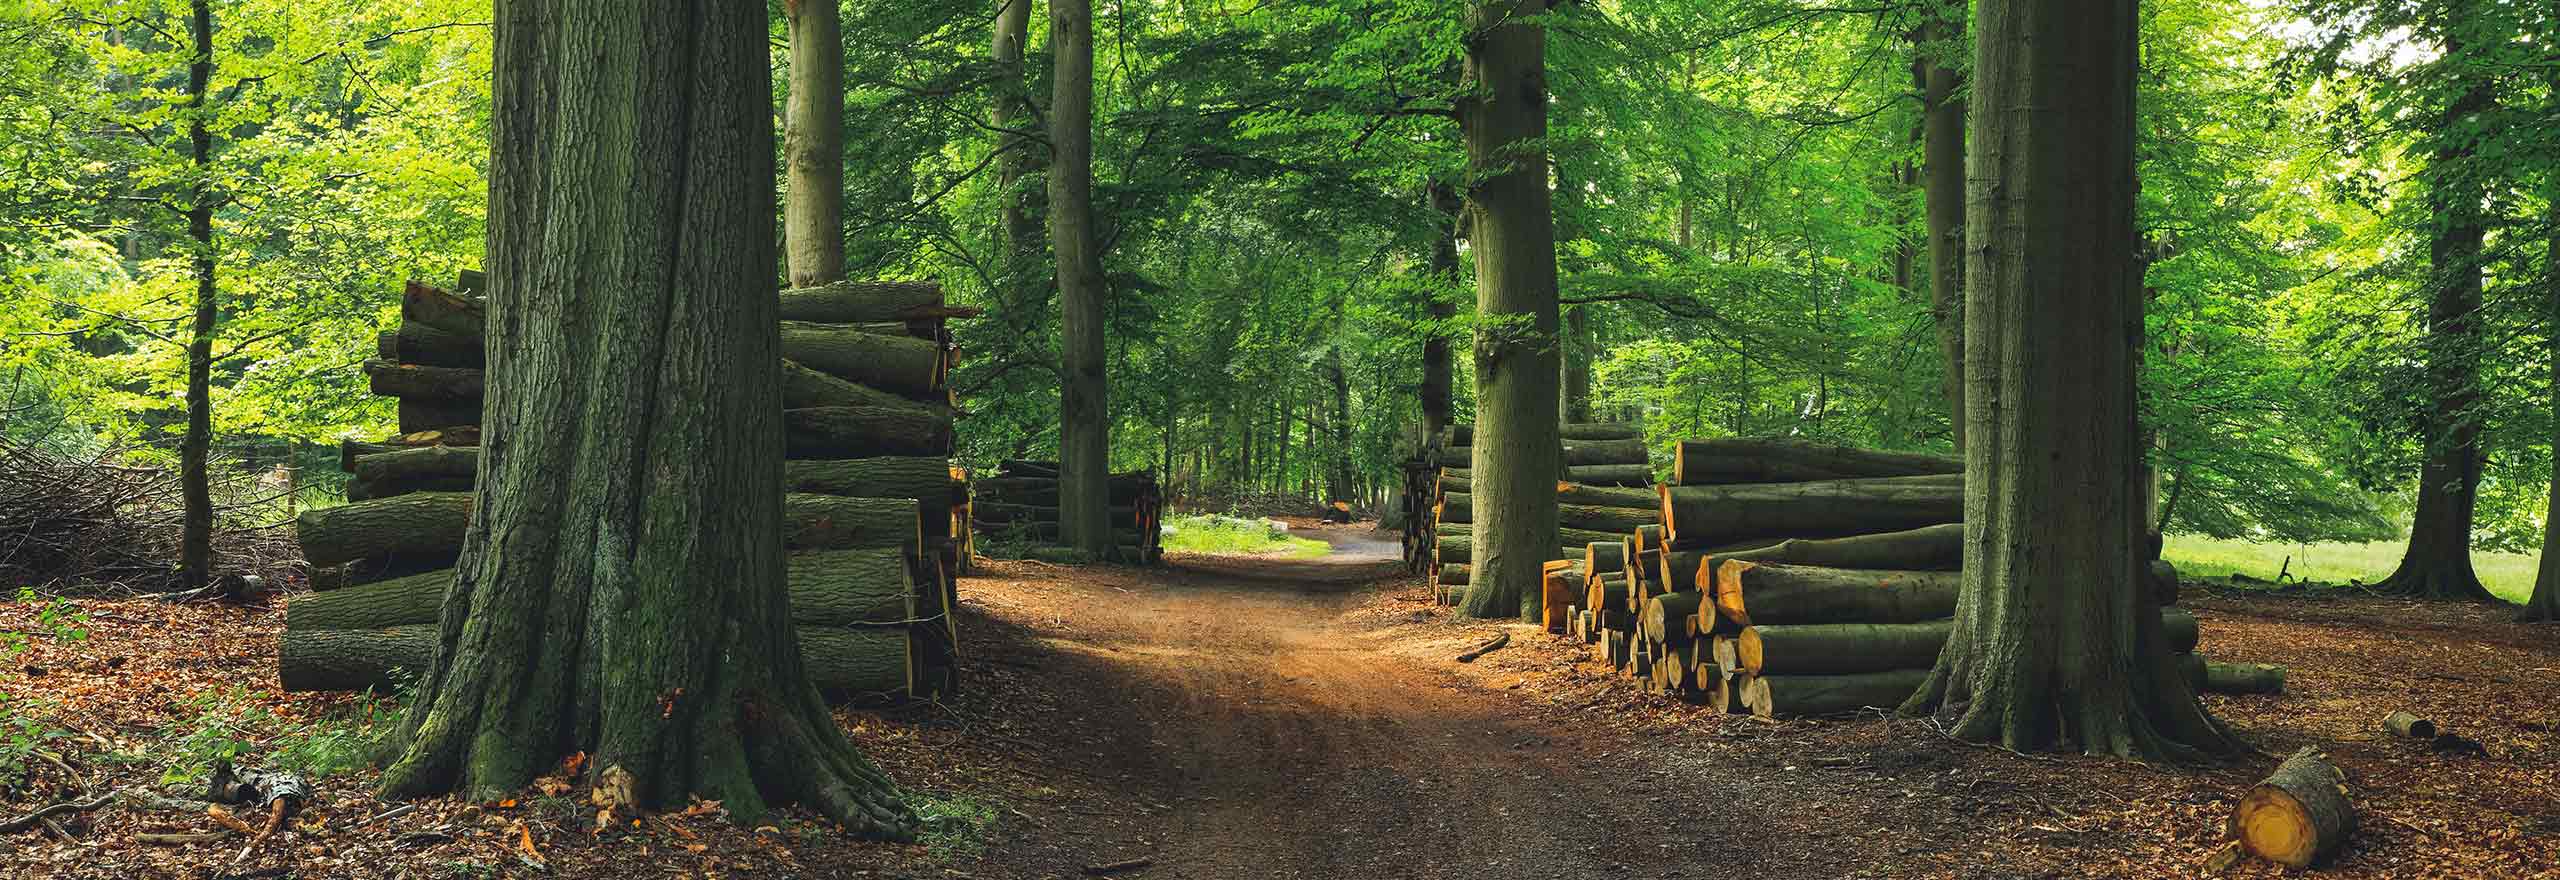 Grüner Wald mit gefällten Bäumen und Holzstapeln 